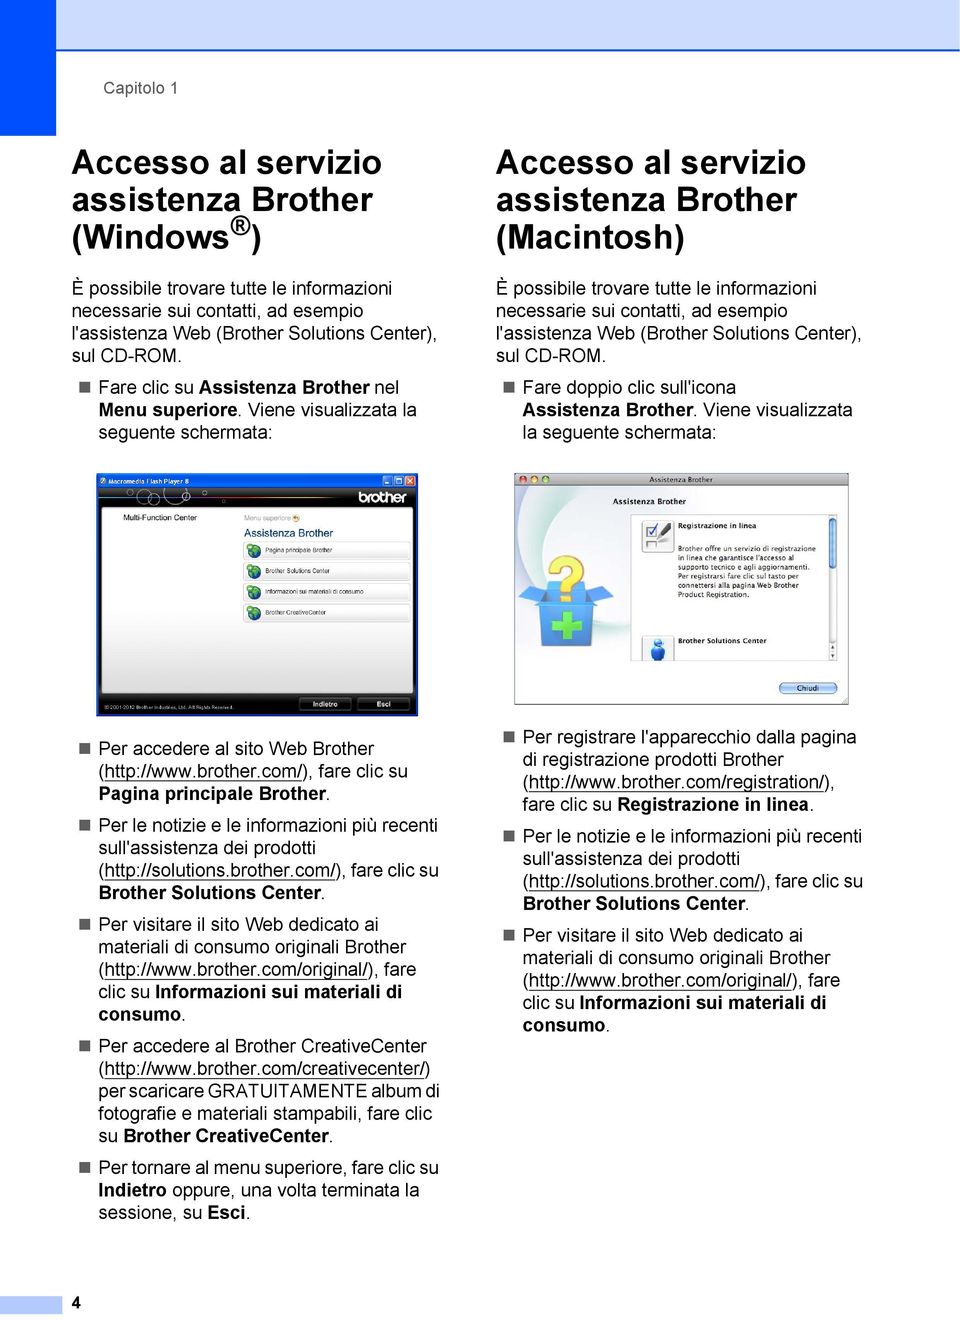 Viene visualizzata la seguente schermata: Accesso al servizio assistenza Brother (Macintosh) 1 È possibile trovare tutte le informazioni necessarie sui contatti, ad esempio l'assistenza Web (Brother